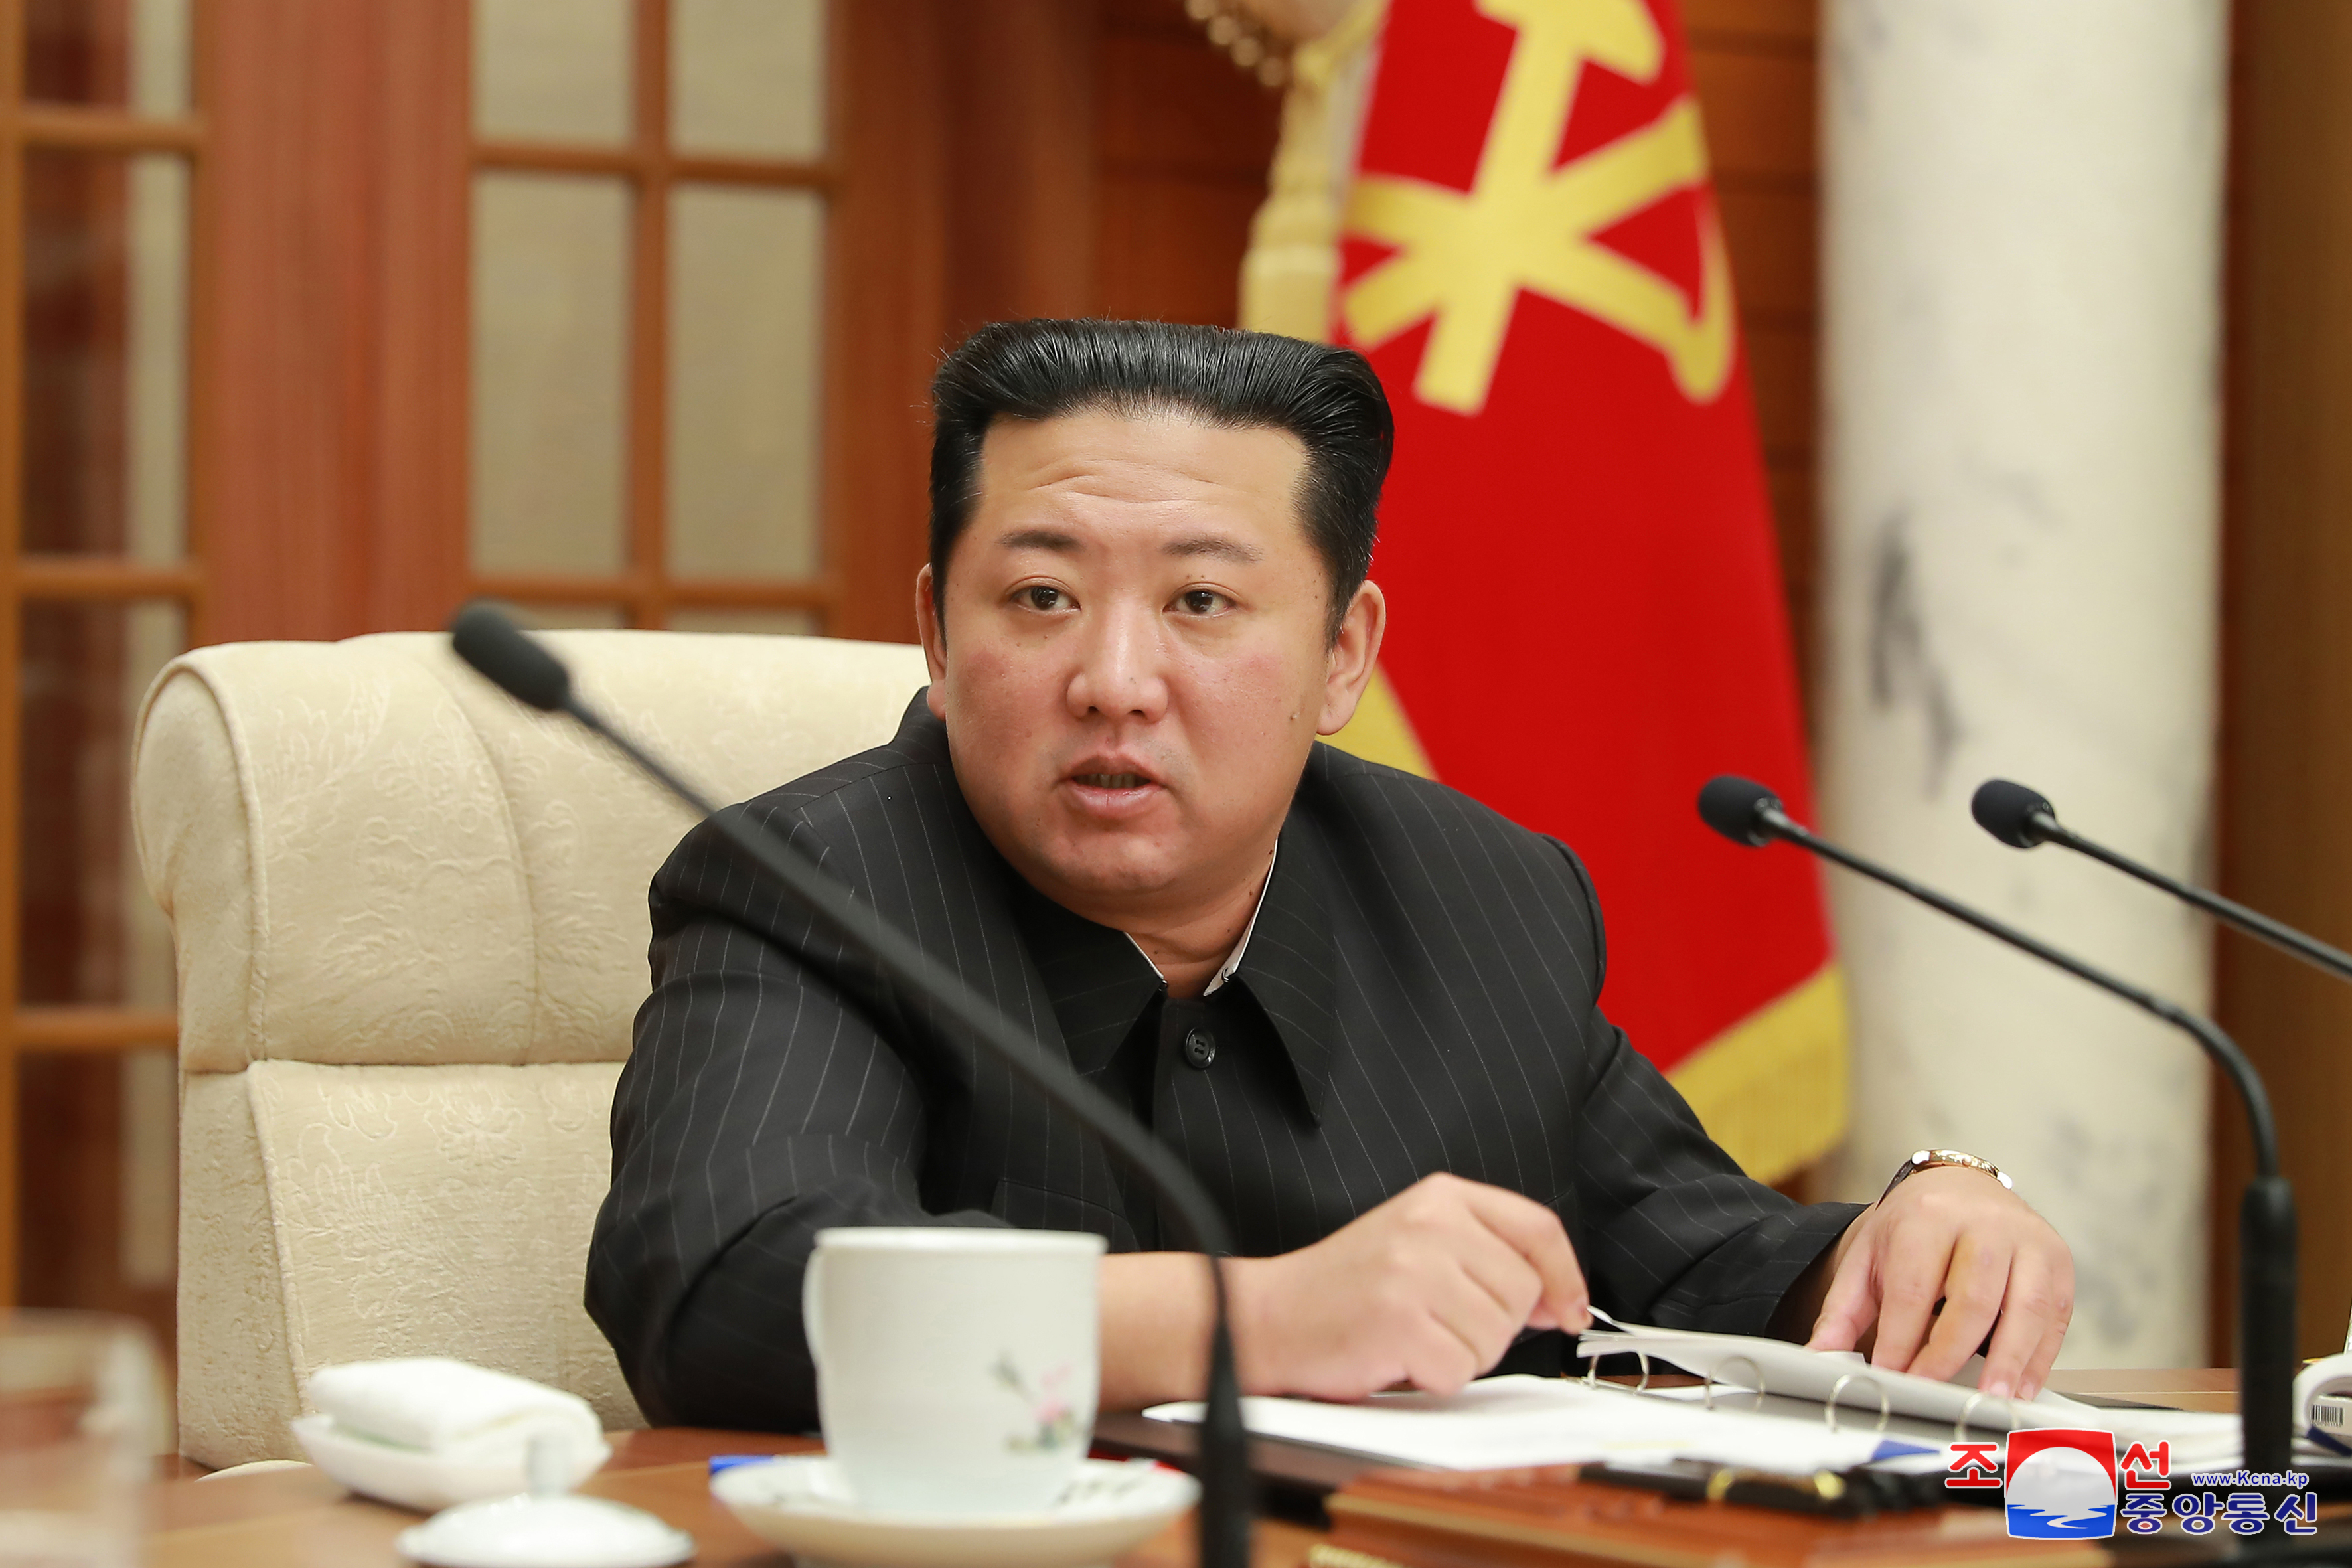 북한 노동당 중앙위원회가 지난 19일 김정은 국무위원장이 참석한 가운데 제8기 제6차 정치국 회의를 열어 미국 대응방안을 논의했다고 조선중앙통신이 밝혔다.